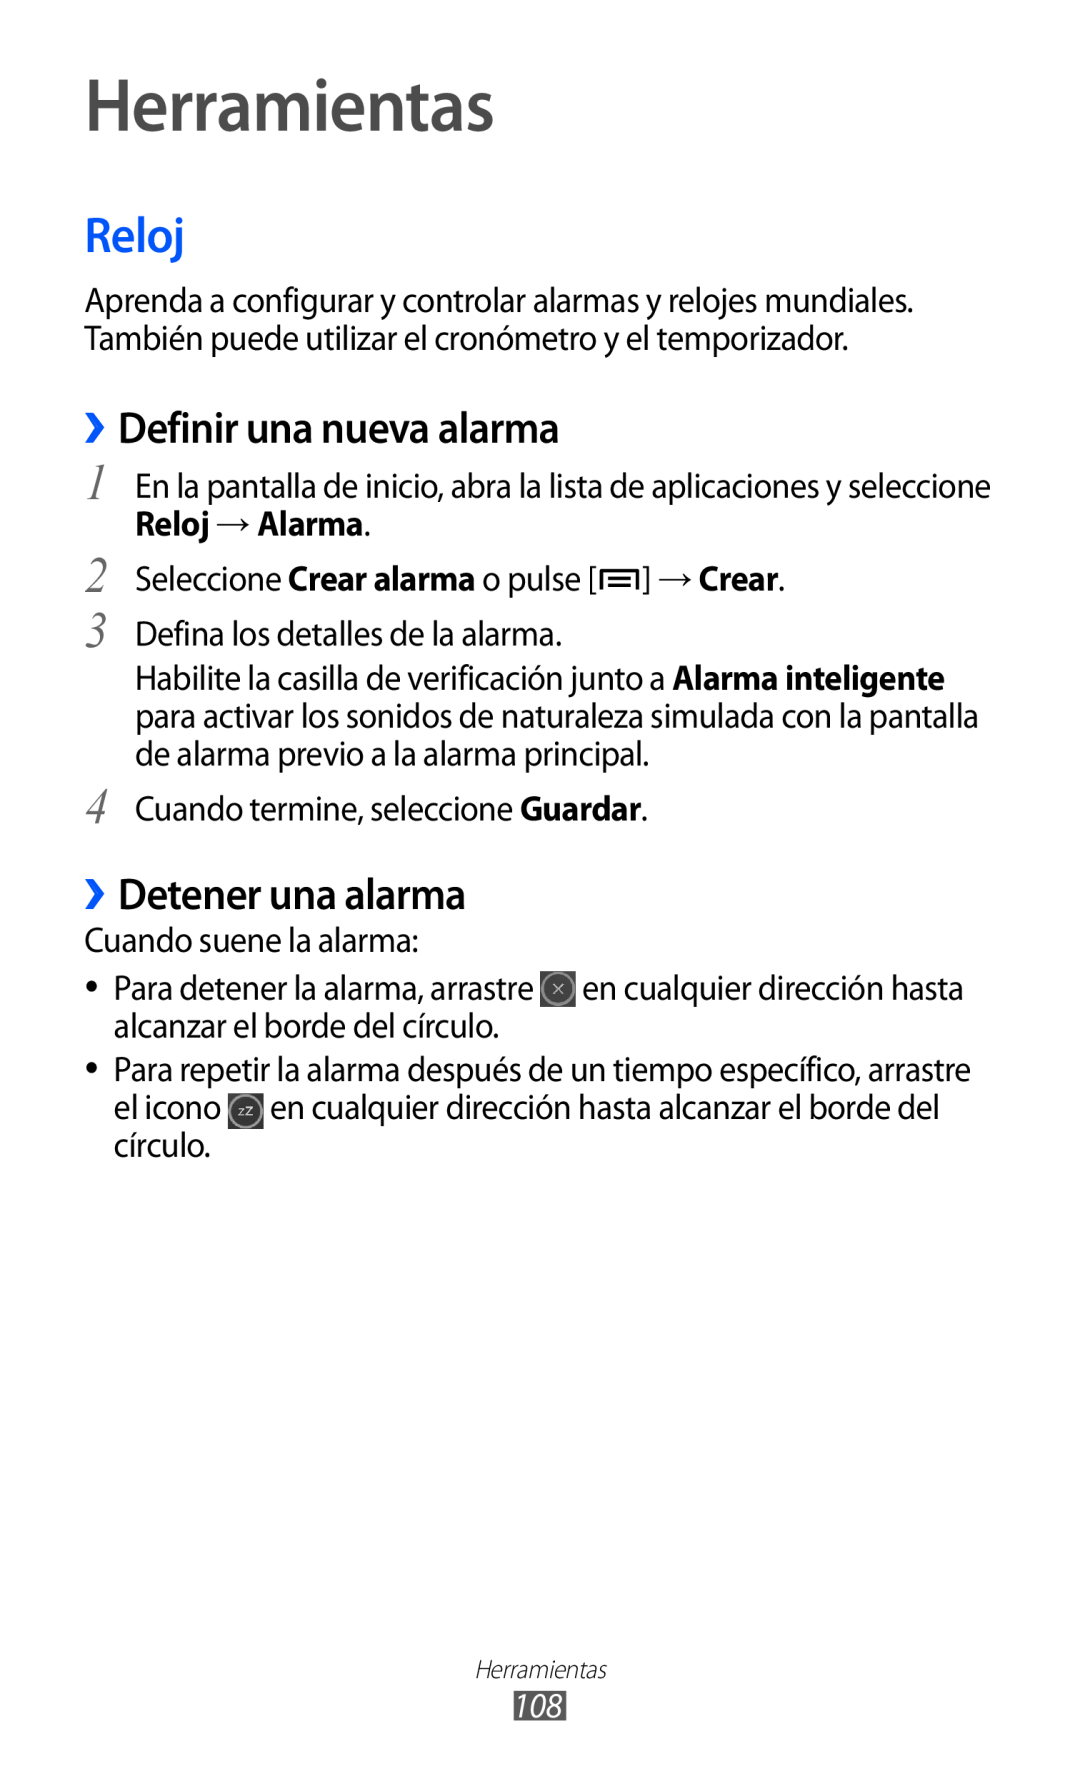 Samsung GT-S6500RWAAMN, GT-S6500RWDTMN manual Herramientas, Reloj, ››Definir una nueva alarma, ››Detener una alarma 